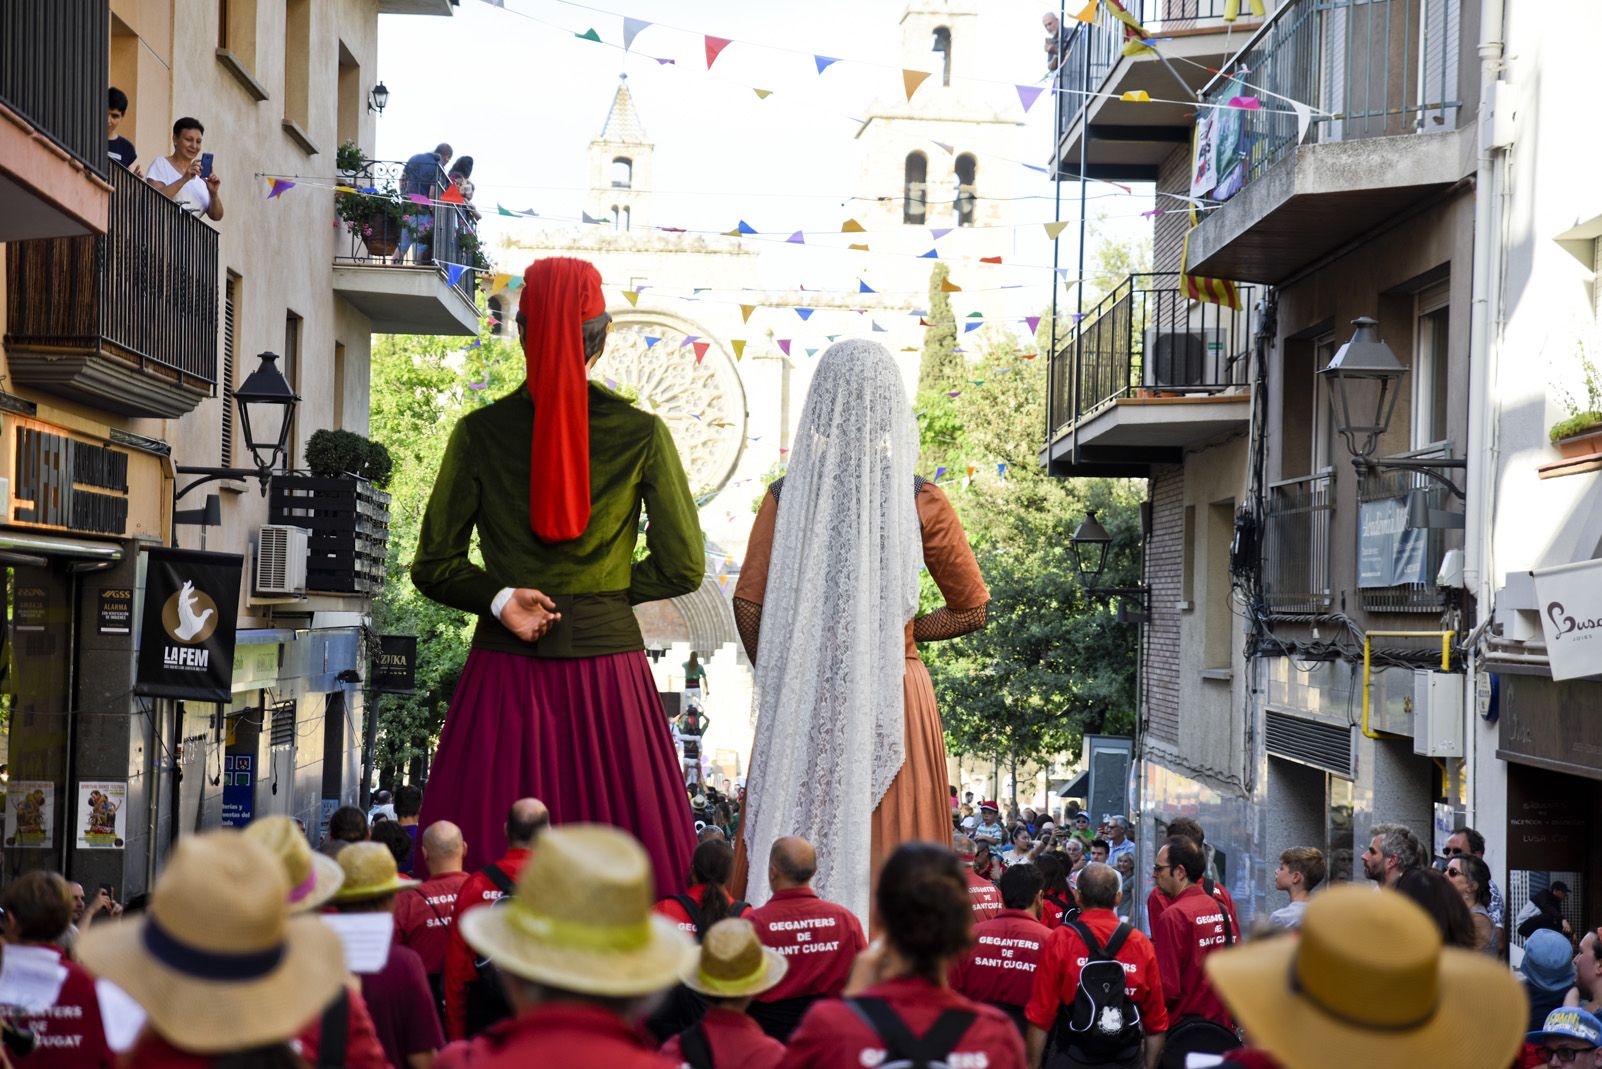 Seguici de Sant Pere de Festa Major. Foto: Bernat Millet.